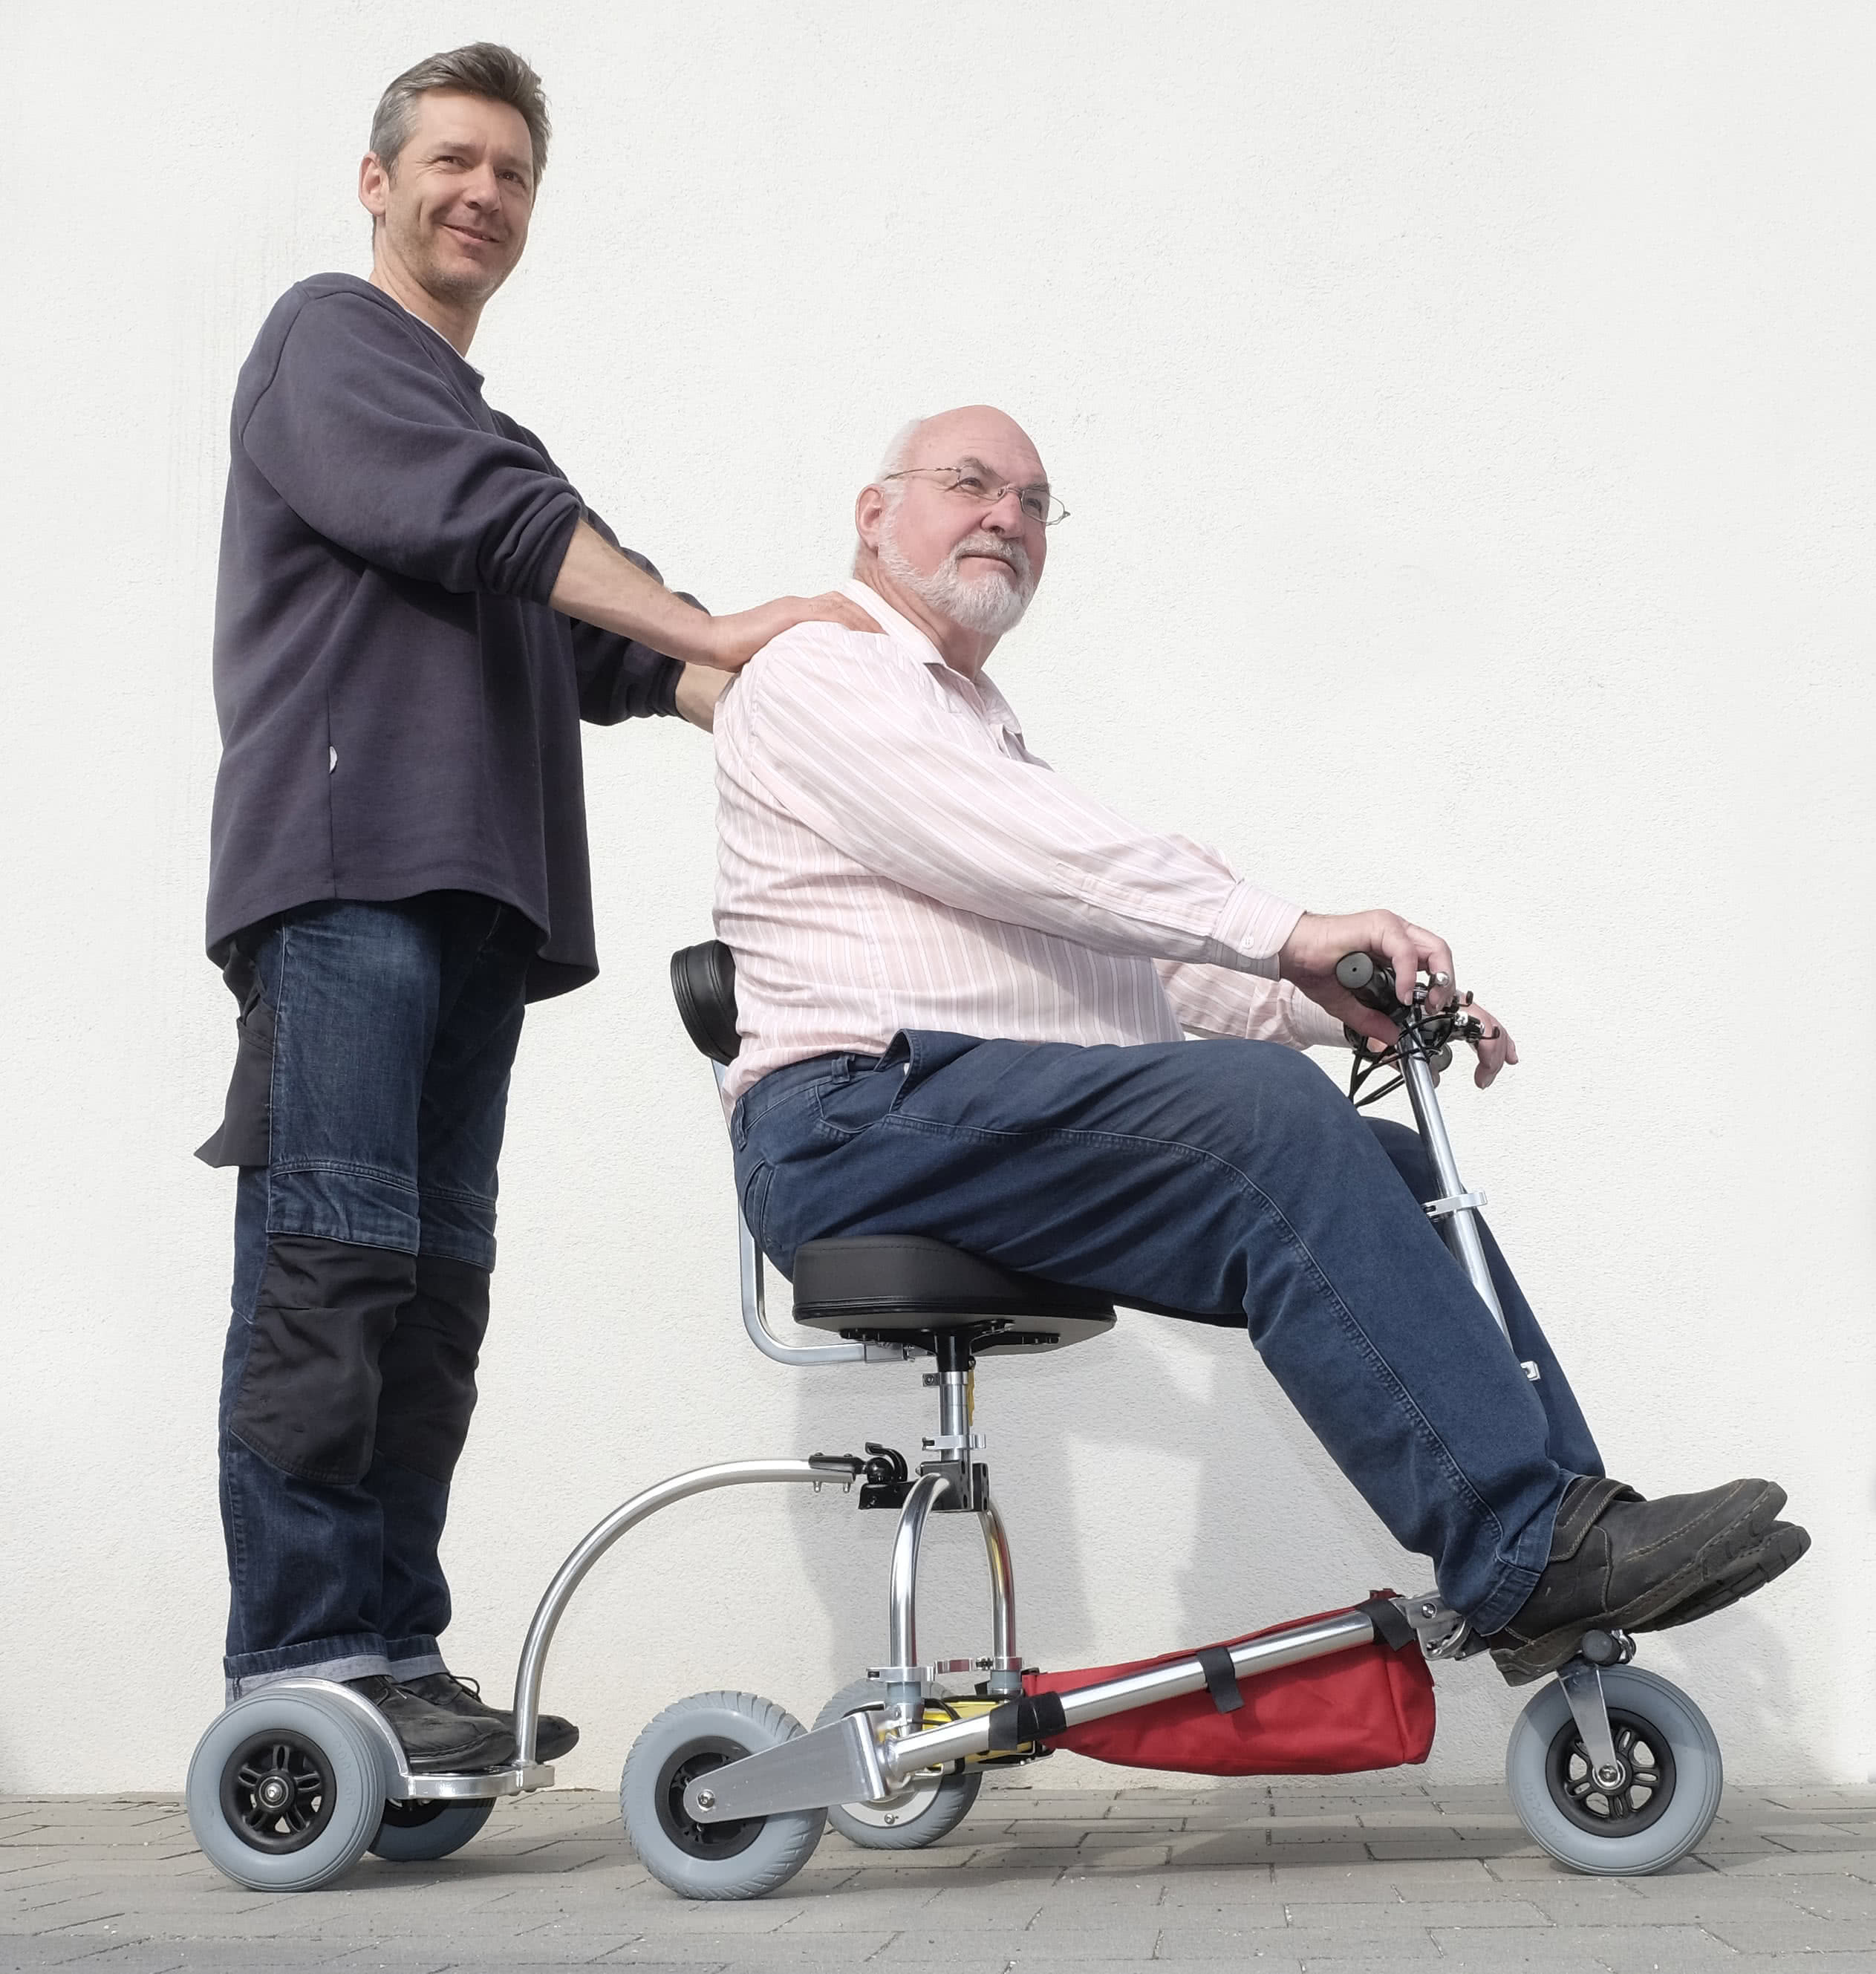 Scooter mit Trittbrett-Anhänger für 2 Personen